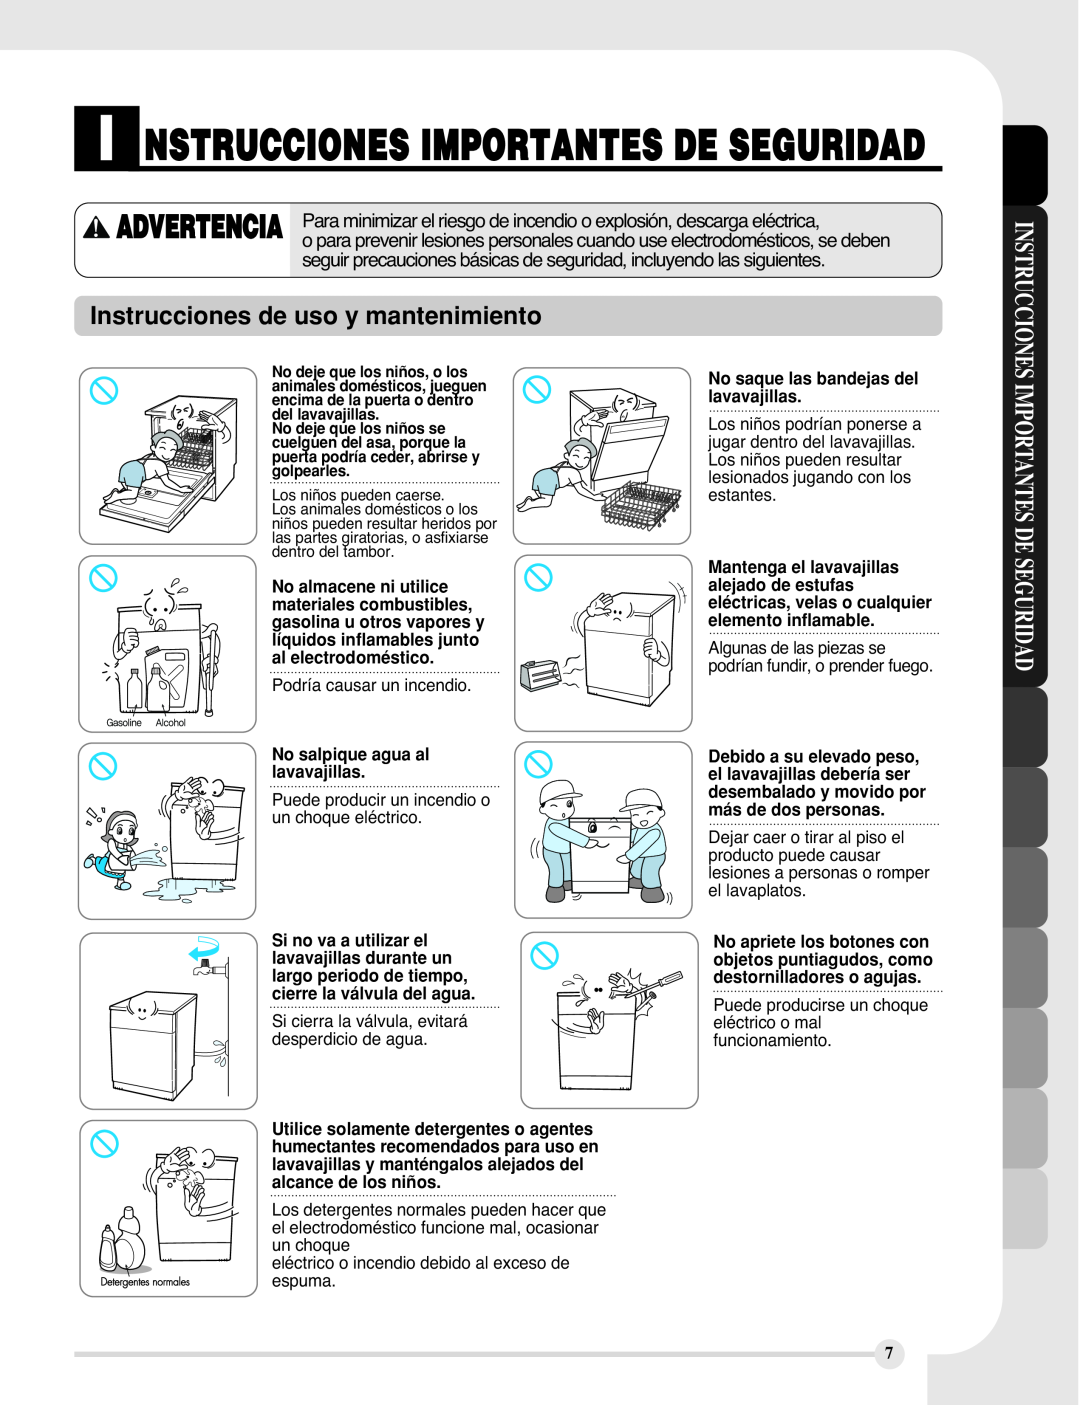 LG Electronics LDF9810BB manual Instrucciones de uso y mantenimiento, I Nstrucciones Importantes De Seguridad, Advertencia 